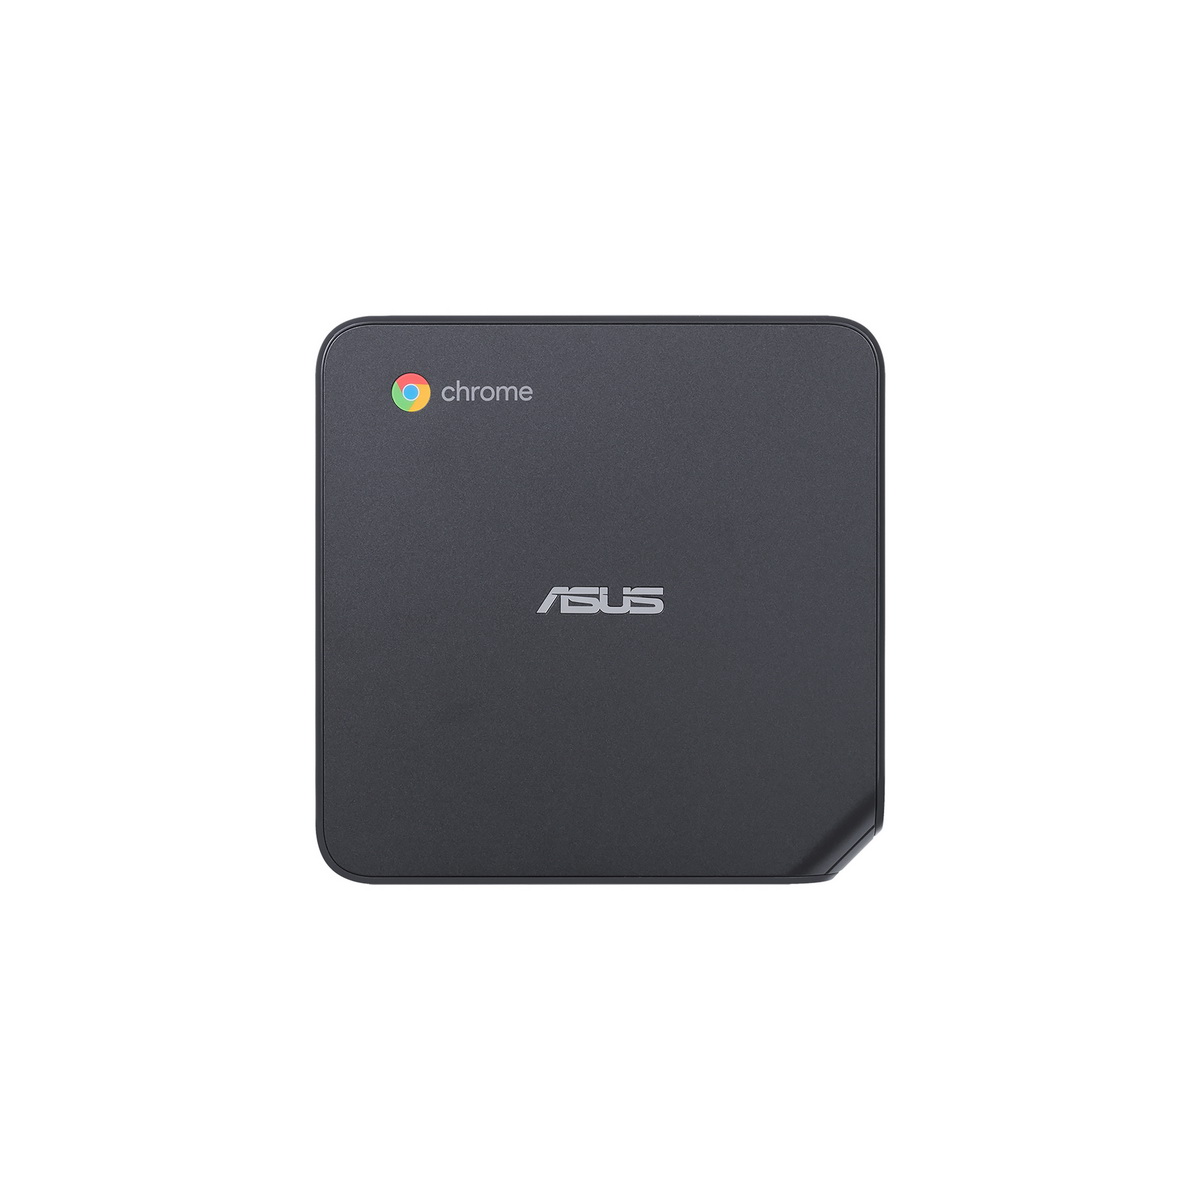 华硕推出搭载Chrome OS系统的ASUS Chromebox 4迷你电脑